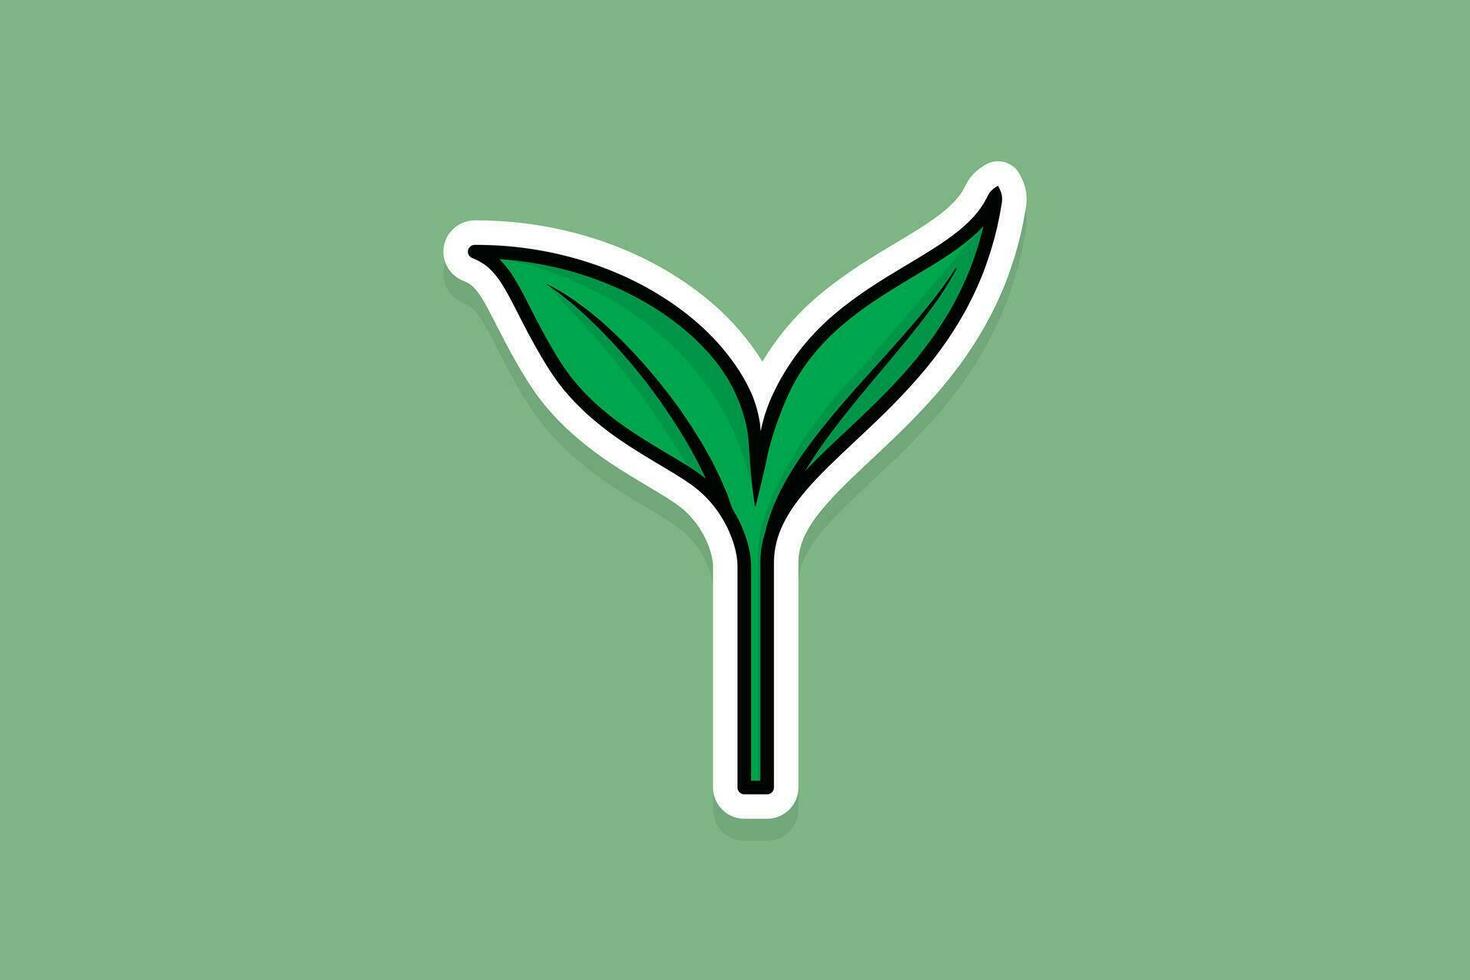 Grün Baum Wachstum Öko Konzept Aufkleber Vektor Illustration. Natur Objekt Symbol Konzept. Saat sprießen im Boden Aufkleber Design Logo.